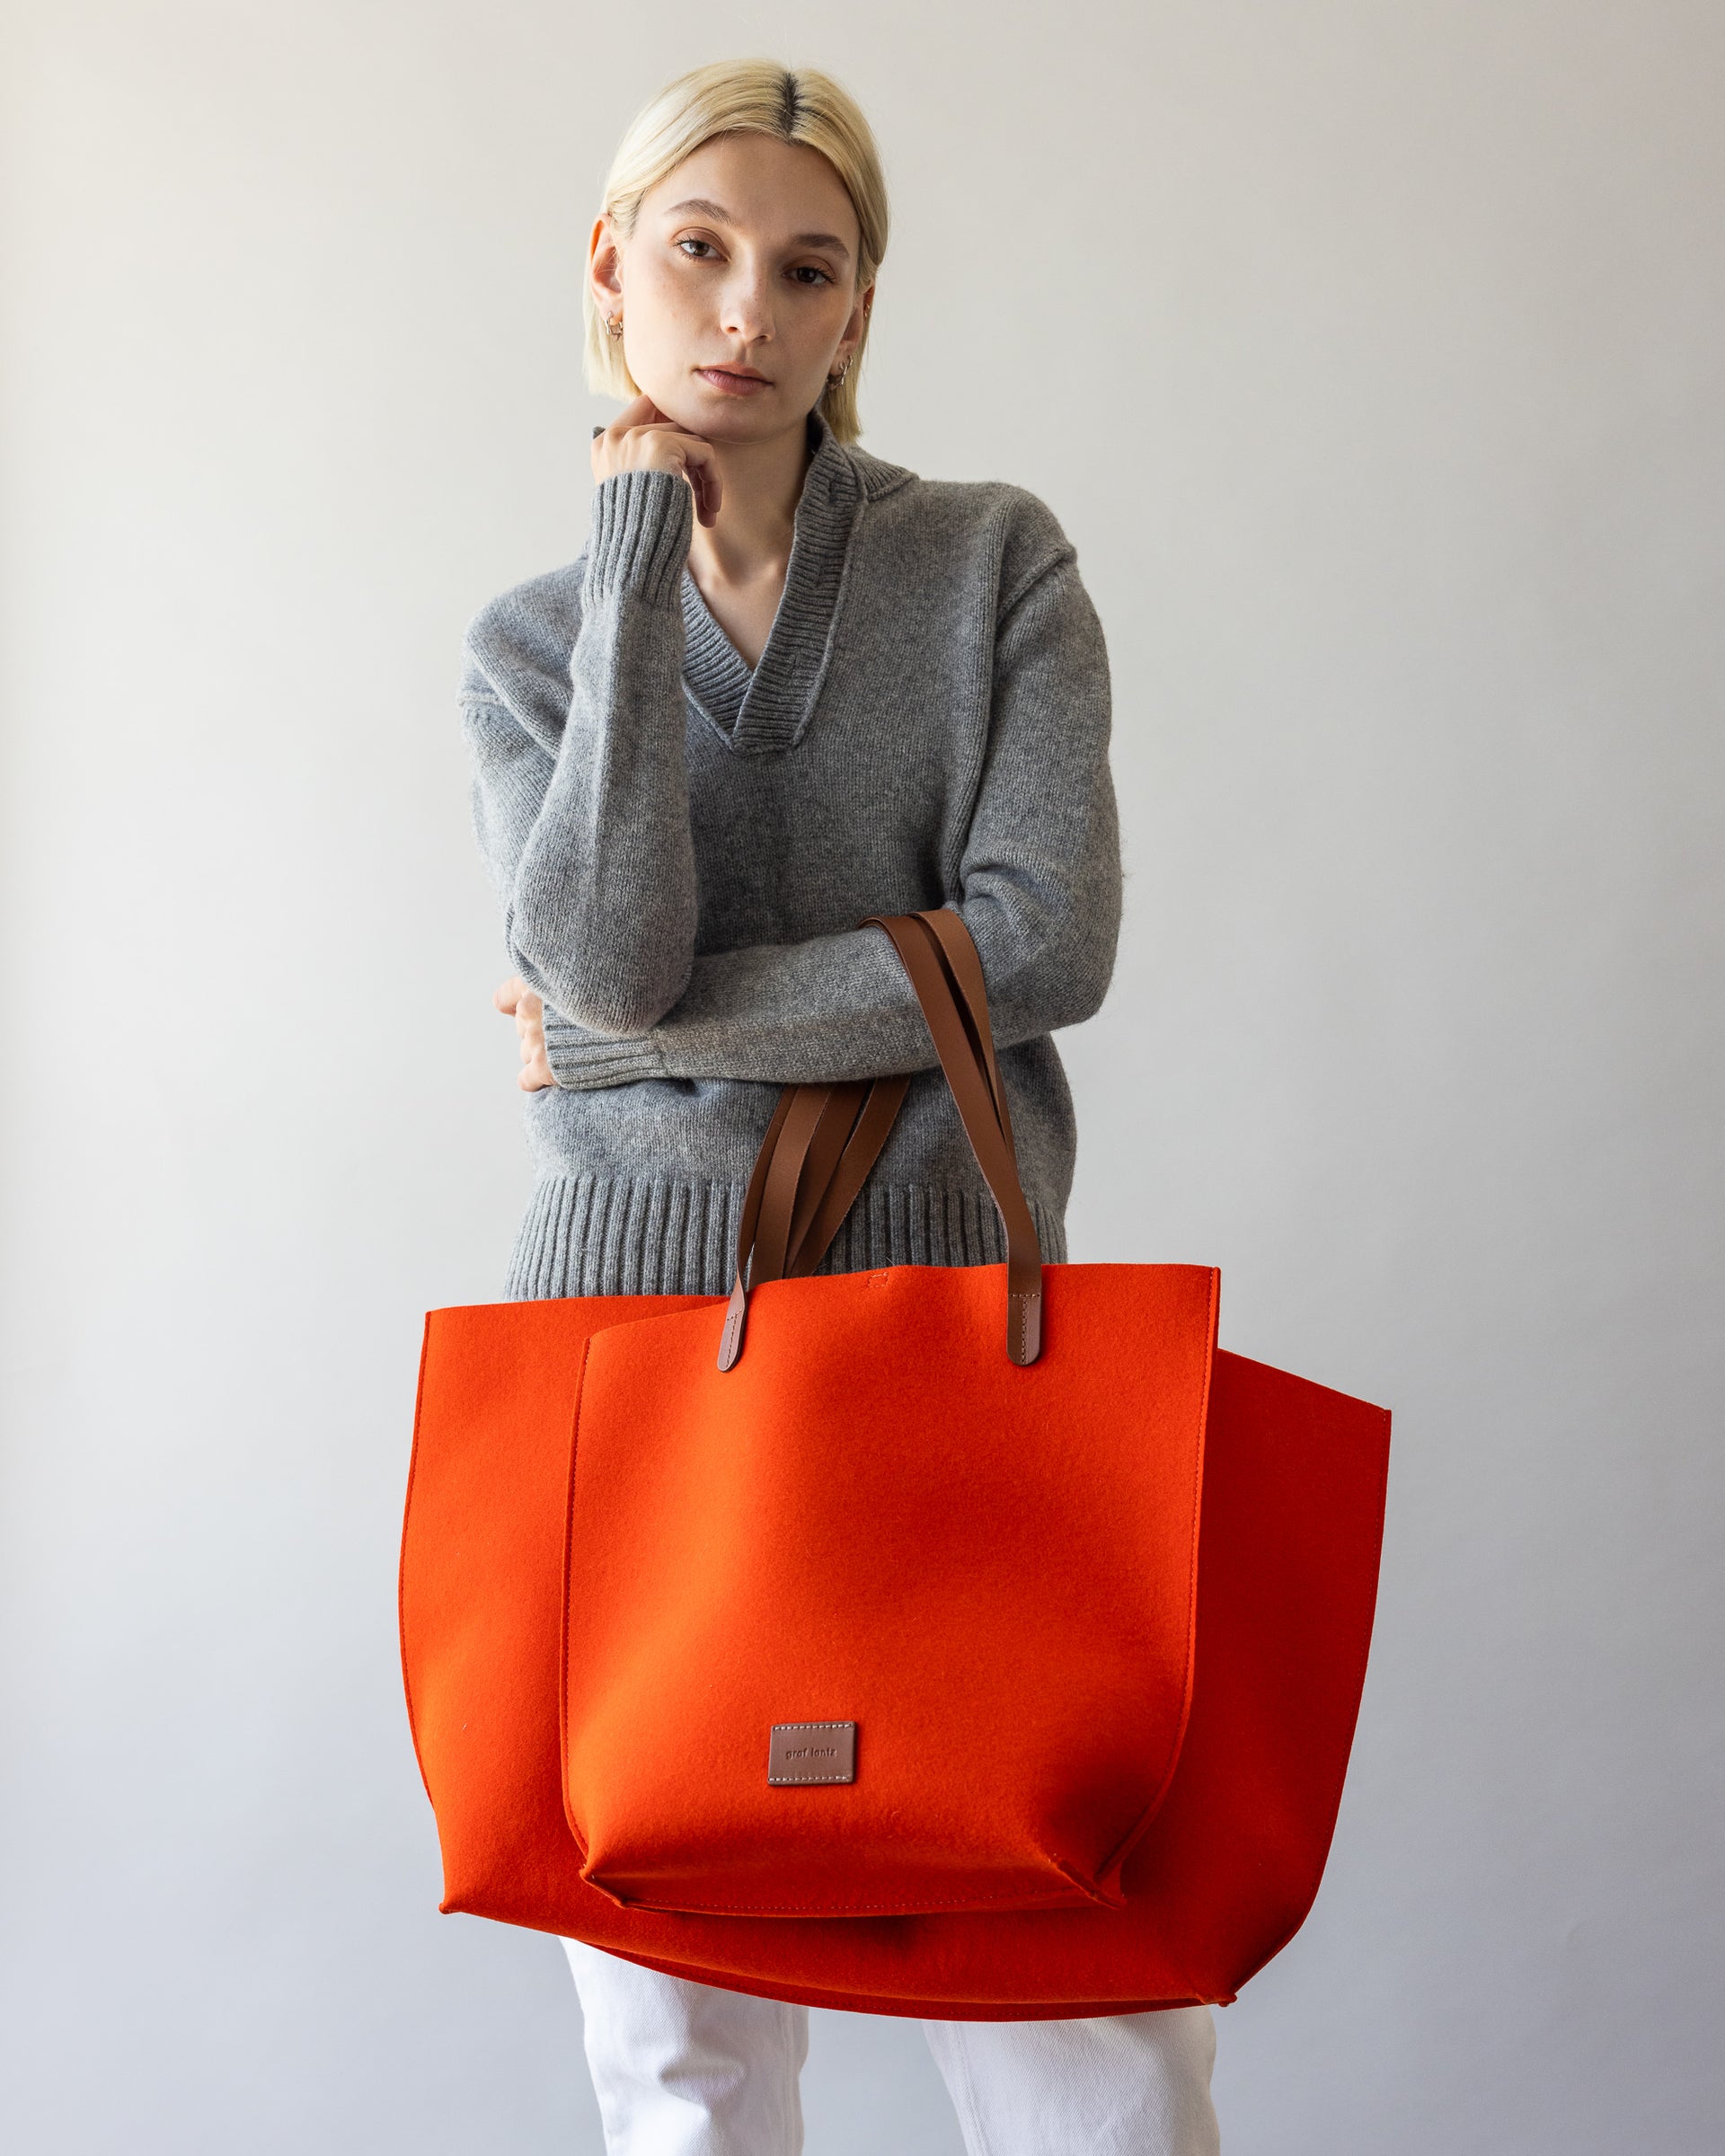 Merino Wool Boat bag behind orange smaller Merino Wool Tote bag both with sienna brown handles over a woman's arm